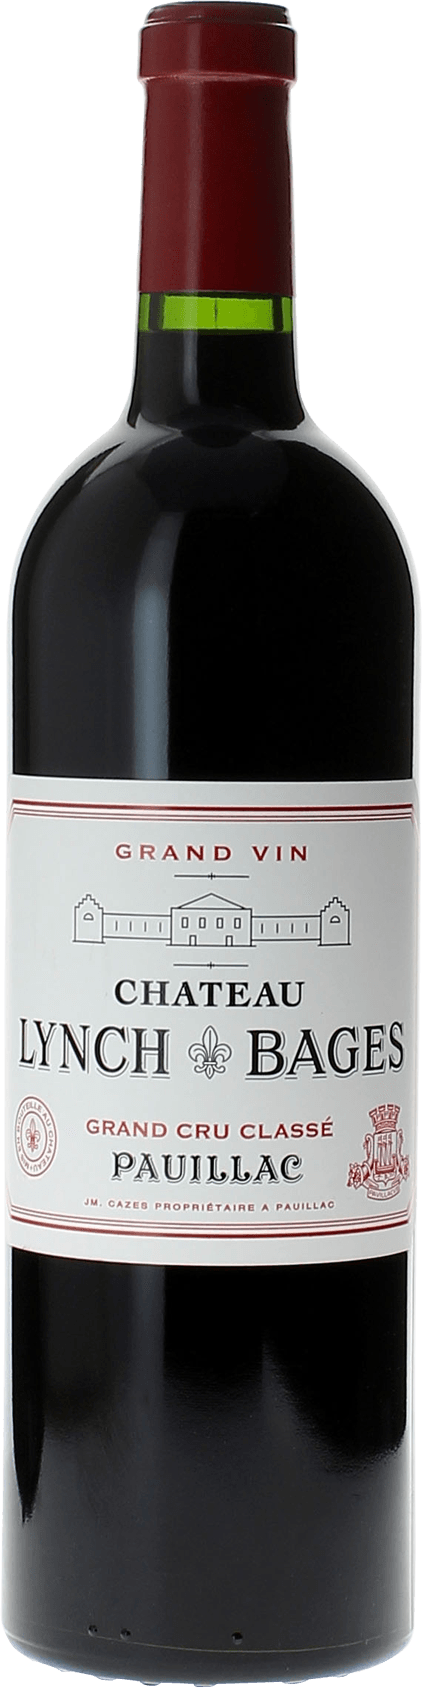 Lynch bages 1996  Pauillac, Bordeaux rouge